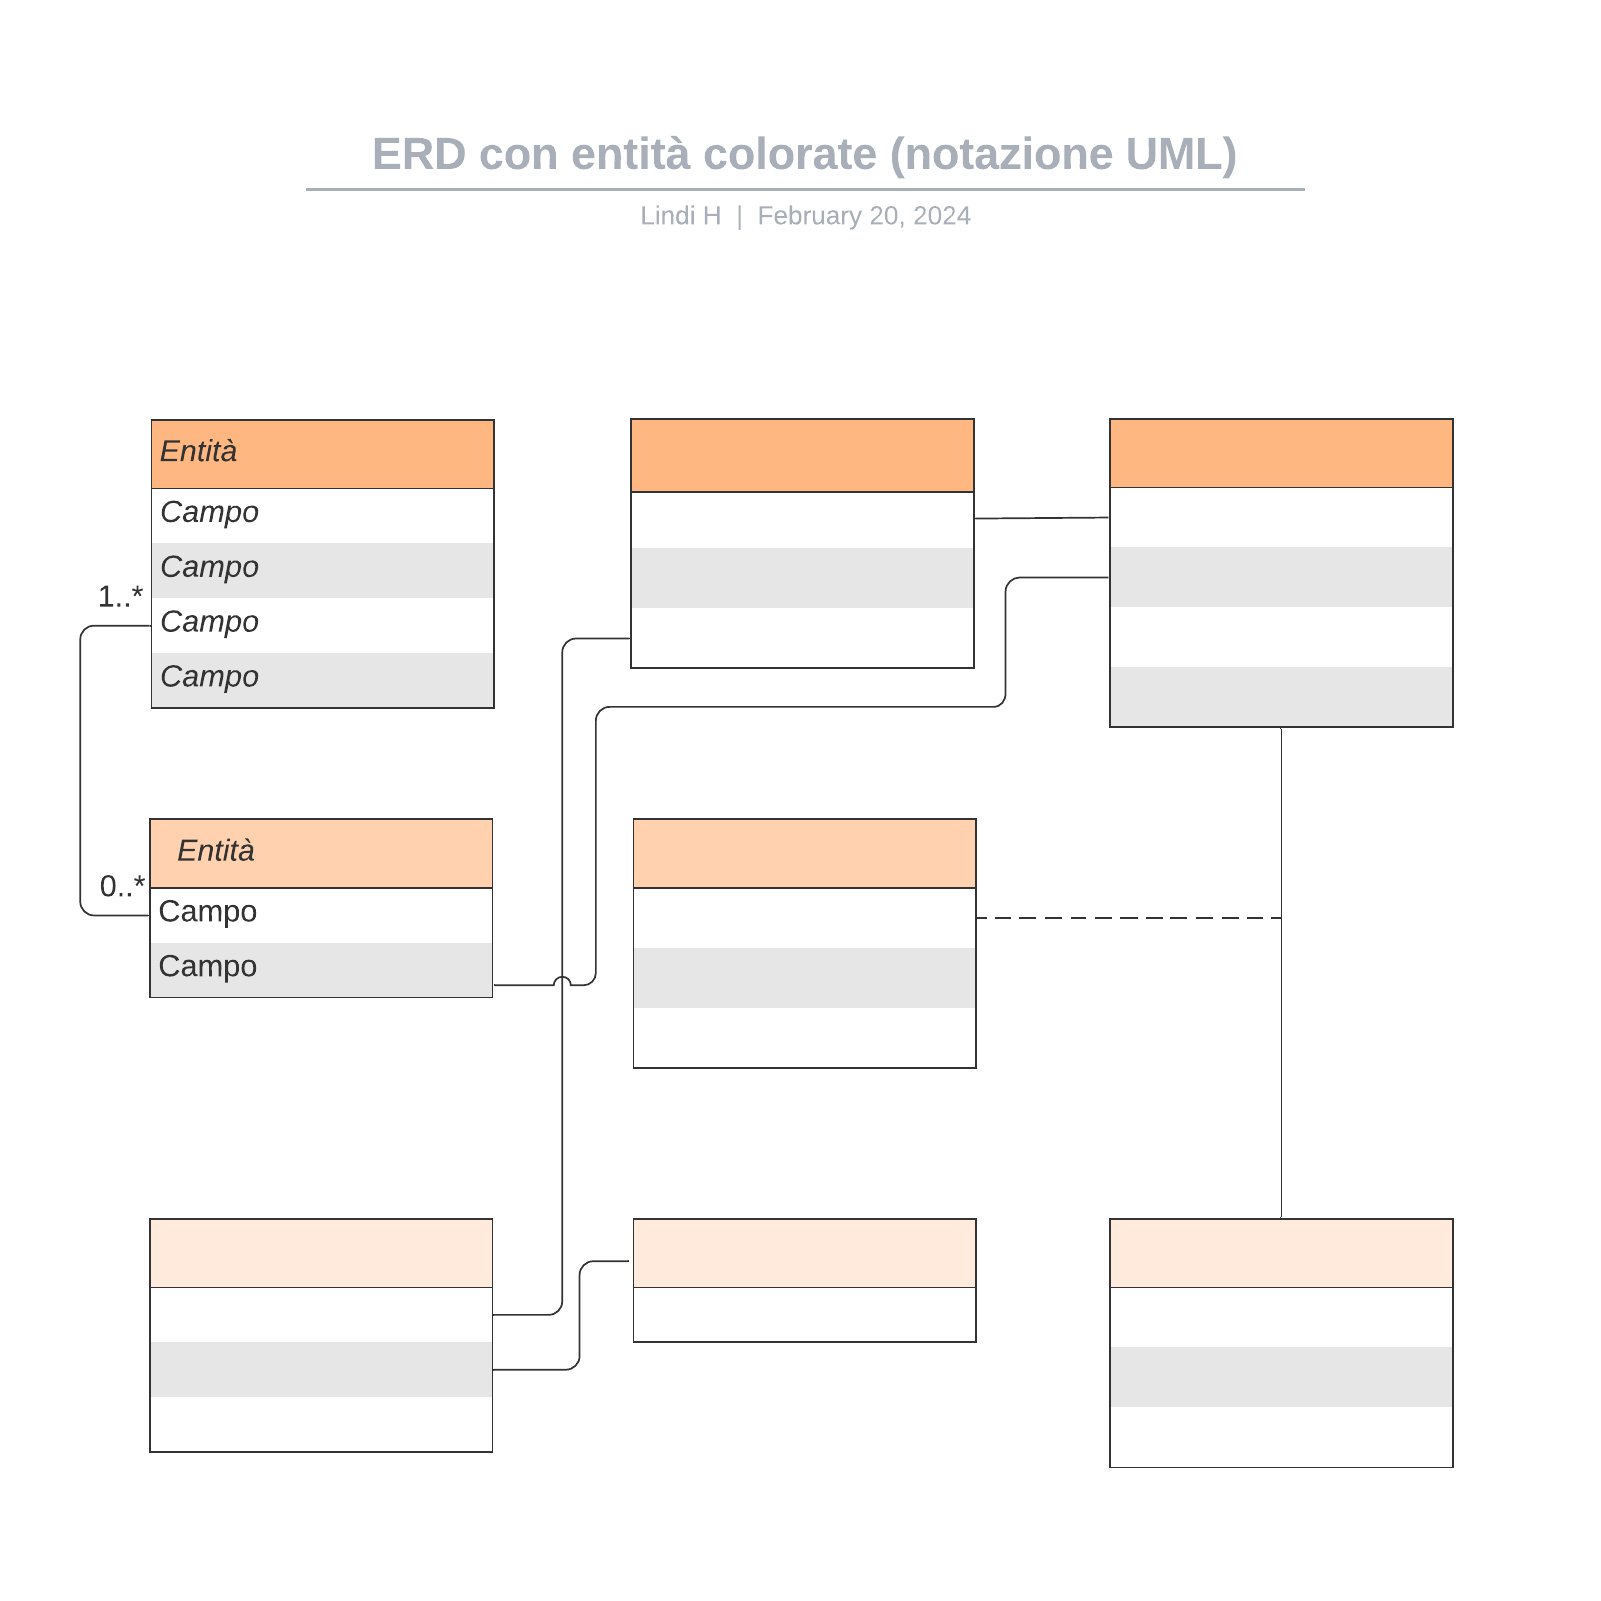 ERD con entità colorate (notazione UML) example